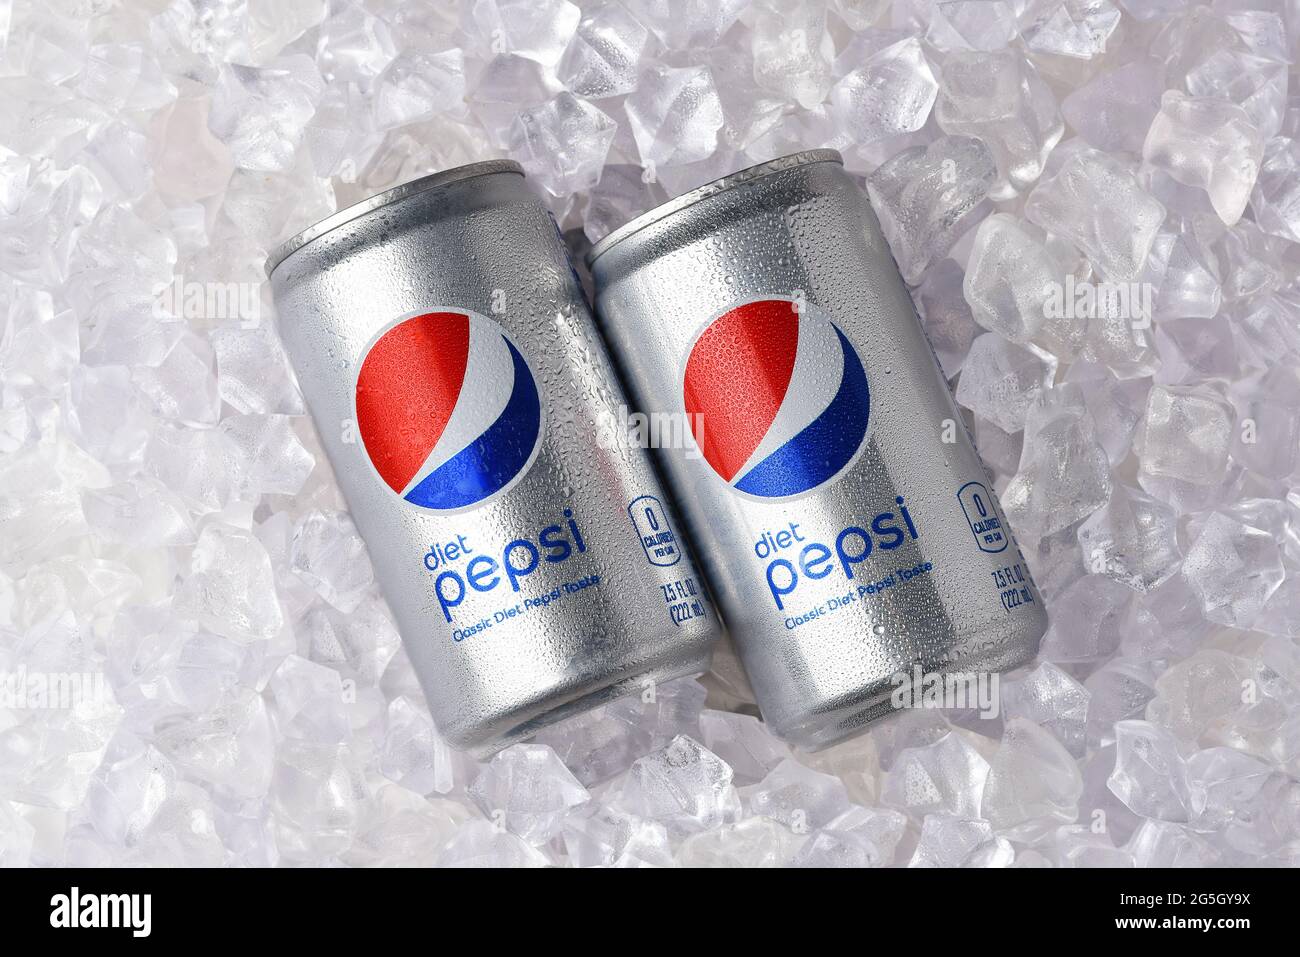 IRVINE, KALIFORNIEN - 26. JUNI 2021: Zwei Dosen Pepsi in einem Eisbett. Stockfoto